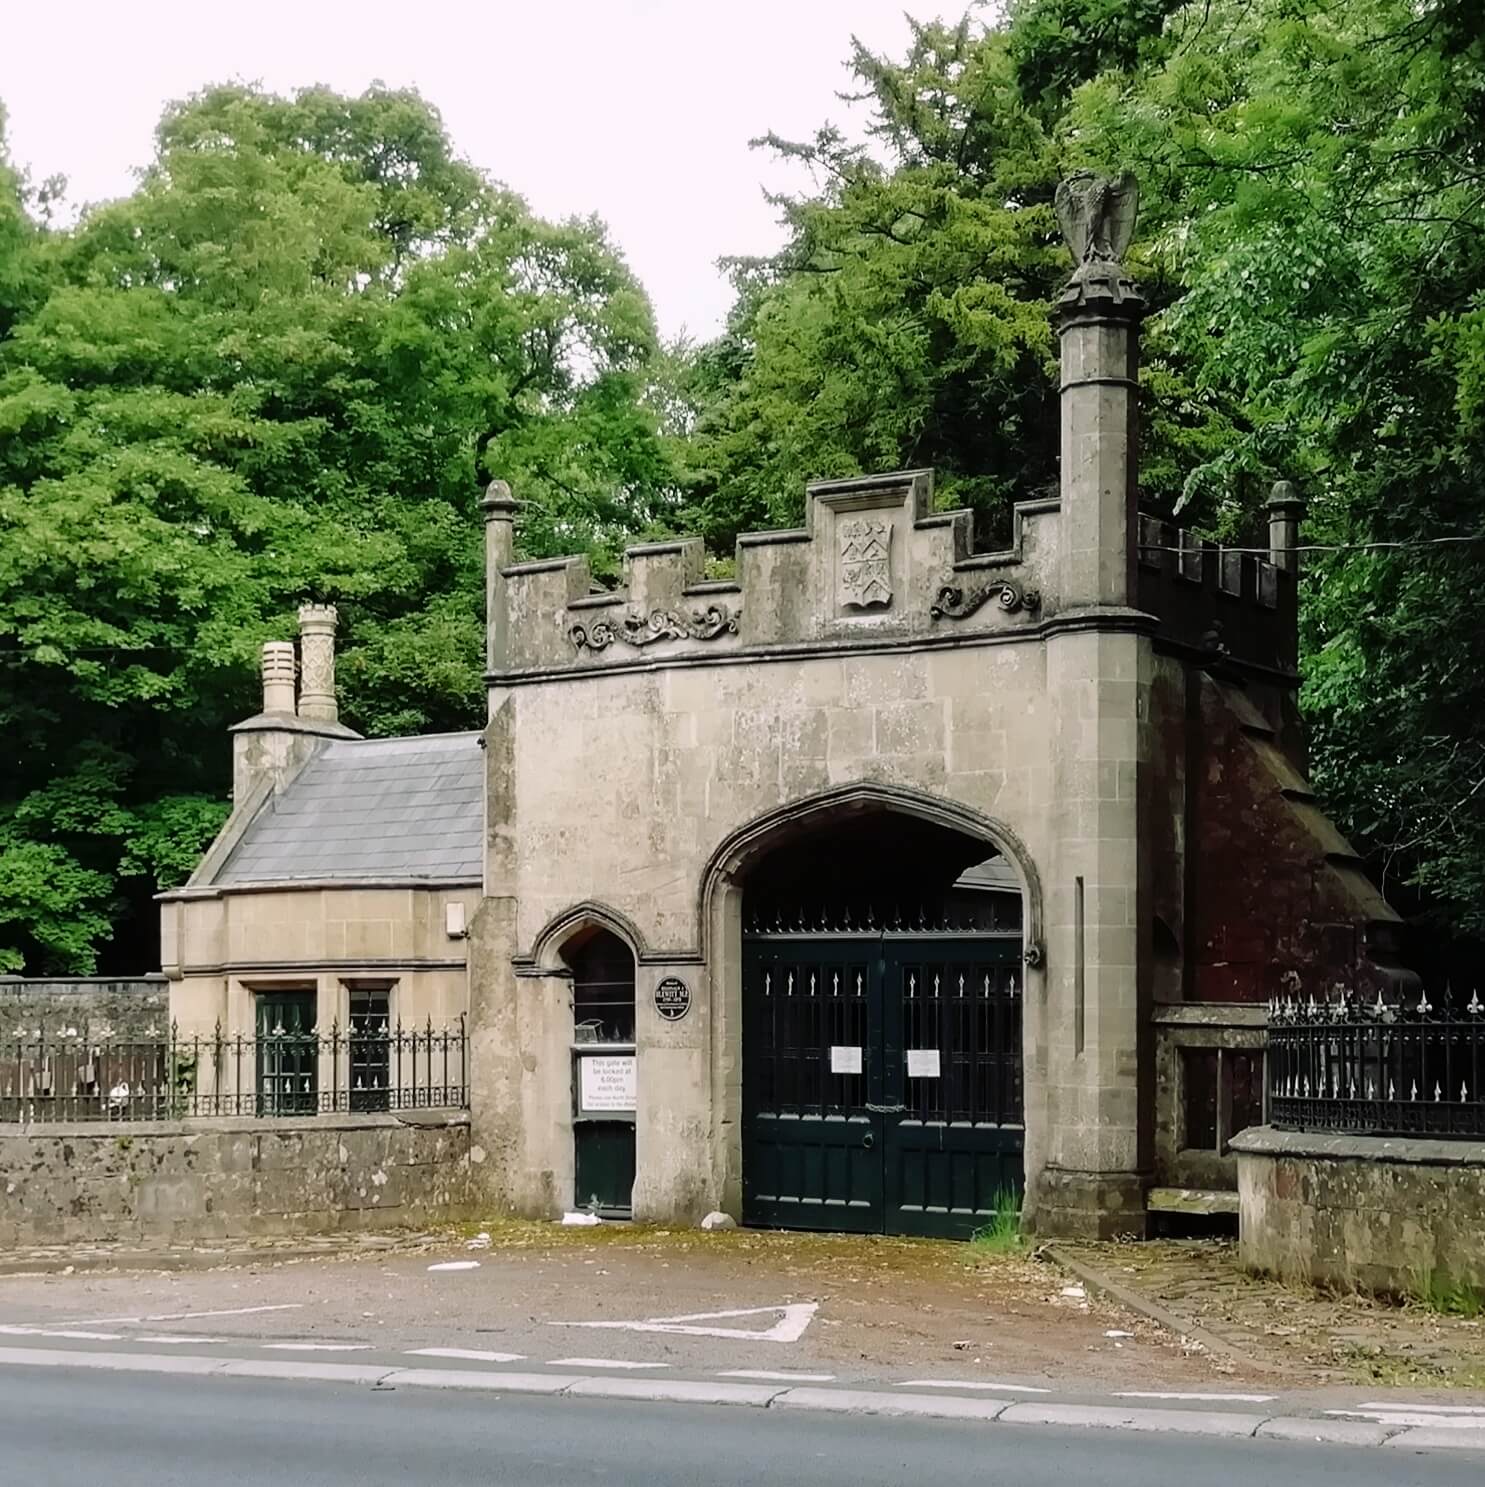 Entrance gates to Llantarnam Abbey